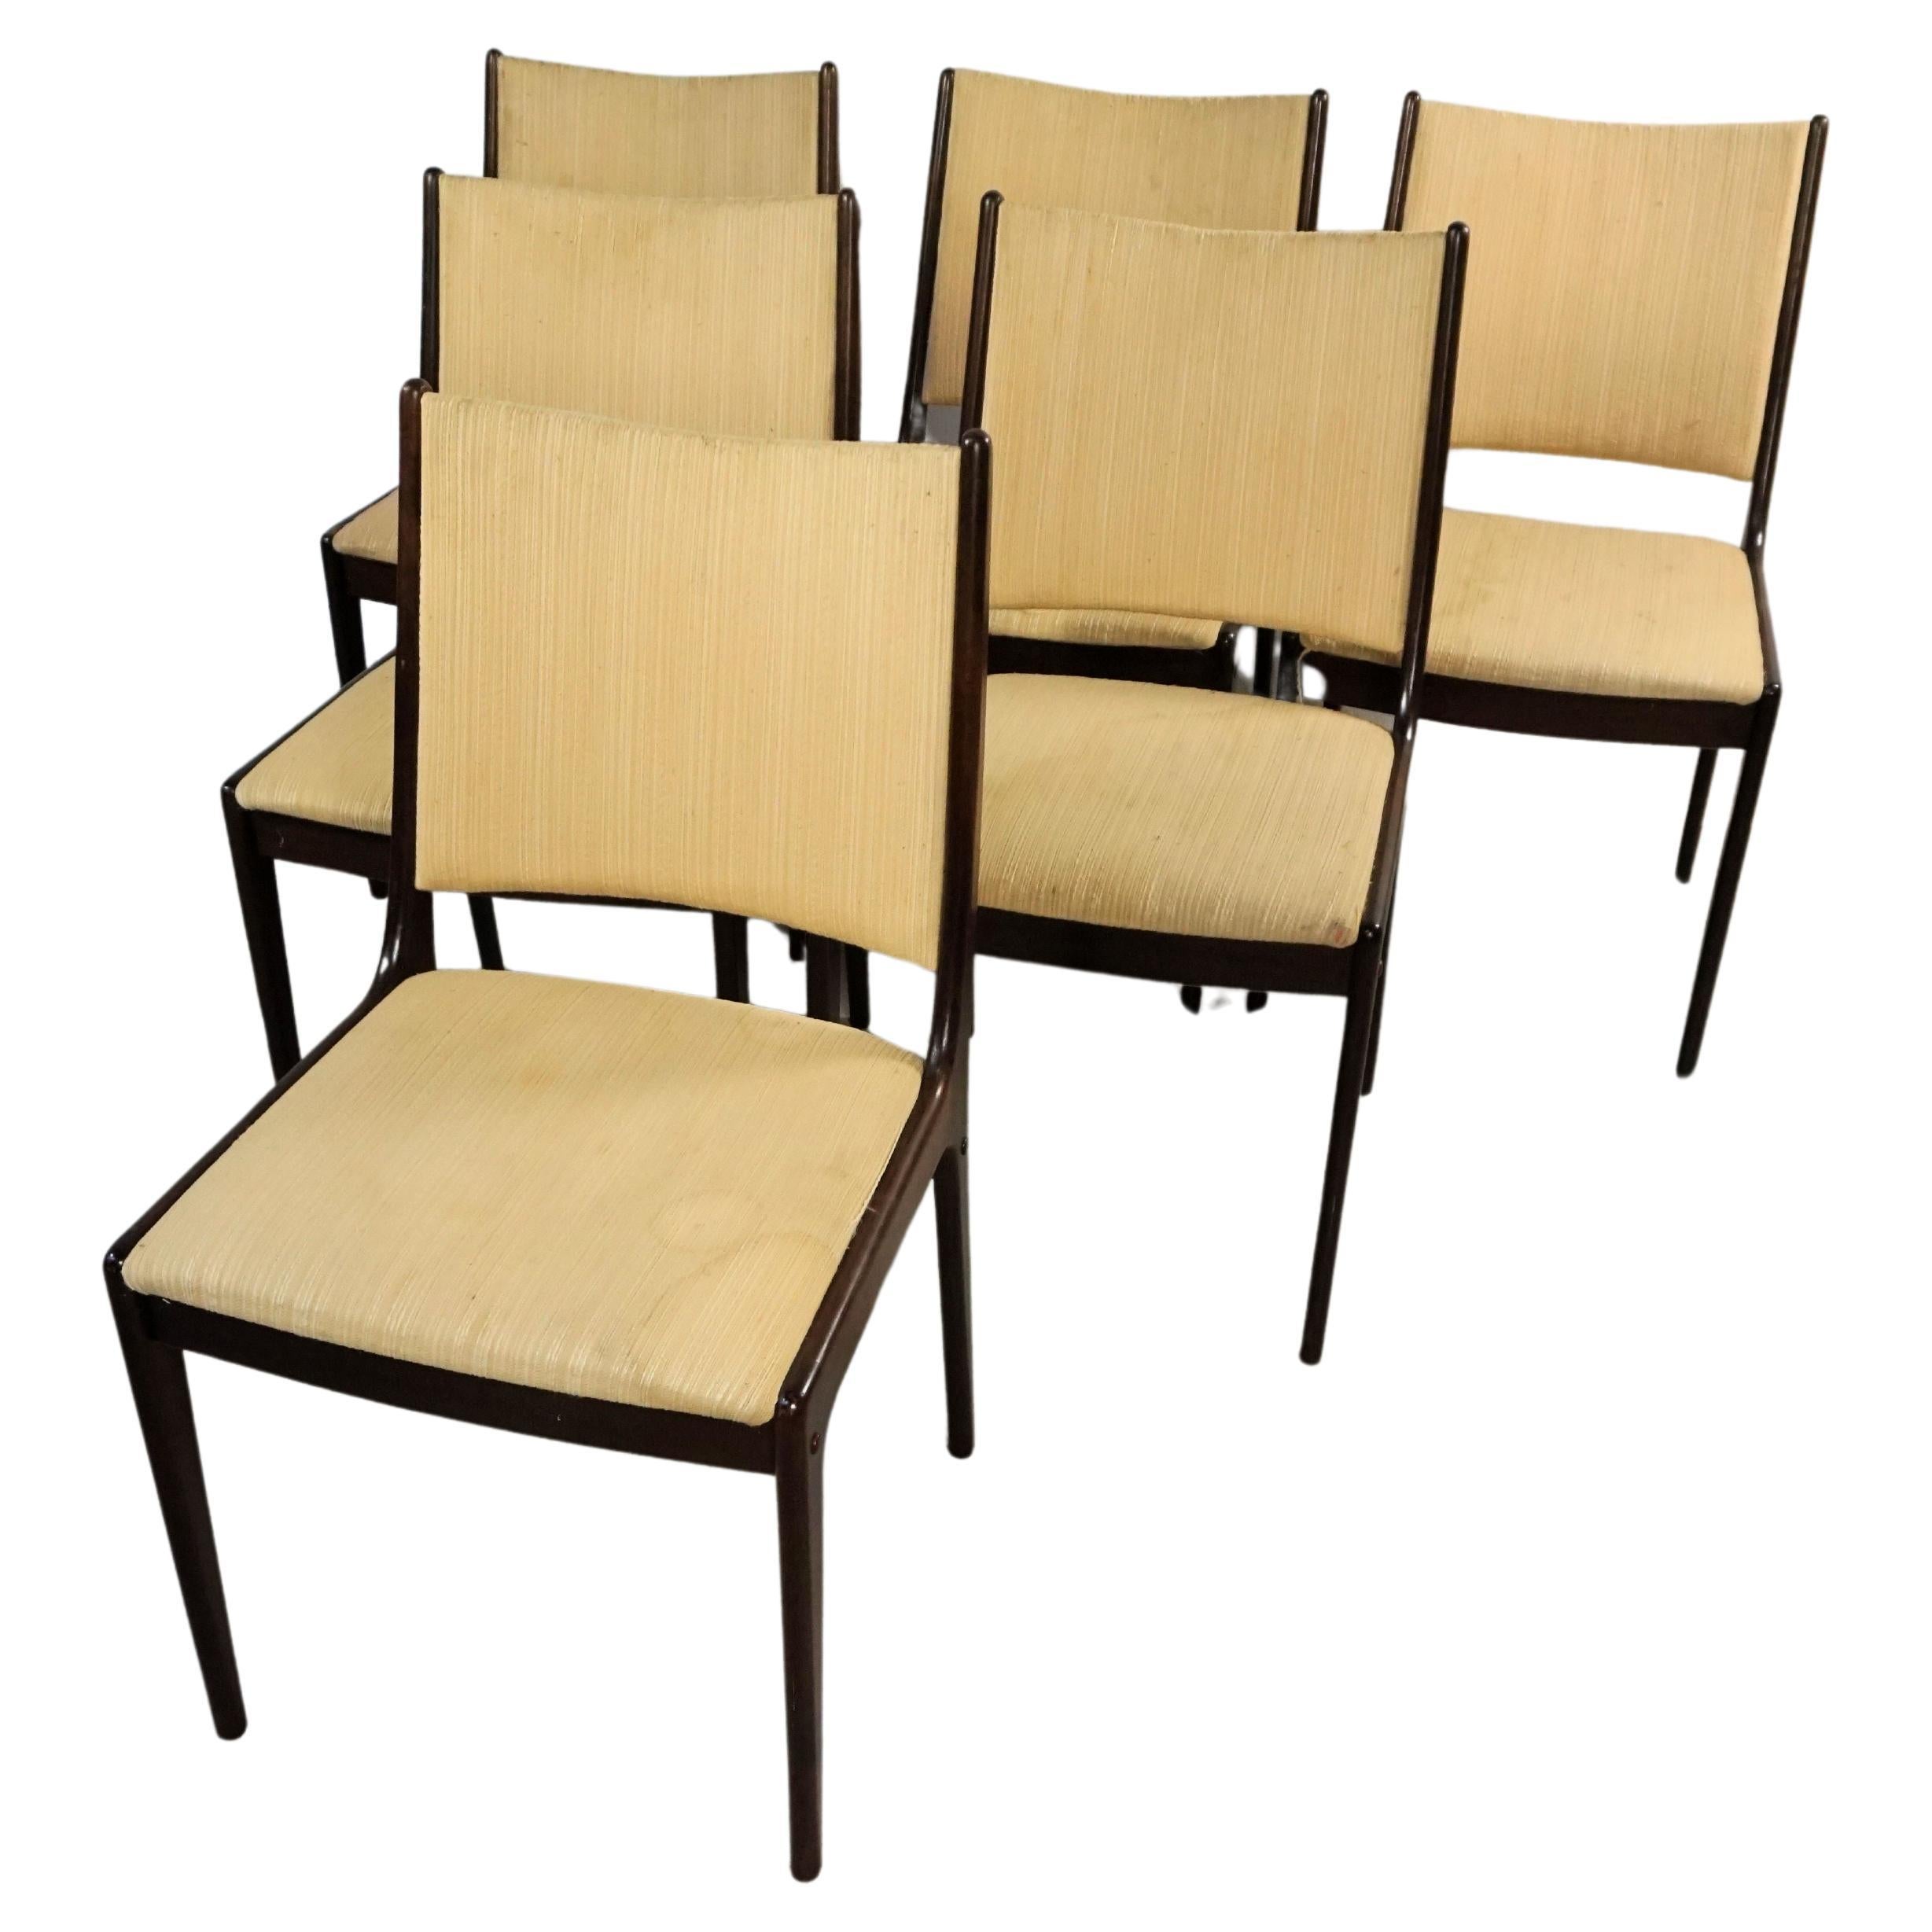 Sechs restaurierte Johannes Andersen-Mahagoni-Esszimmerstühle, maßgefertigte Polsterung